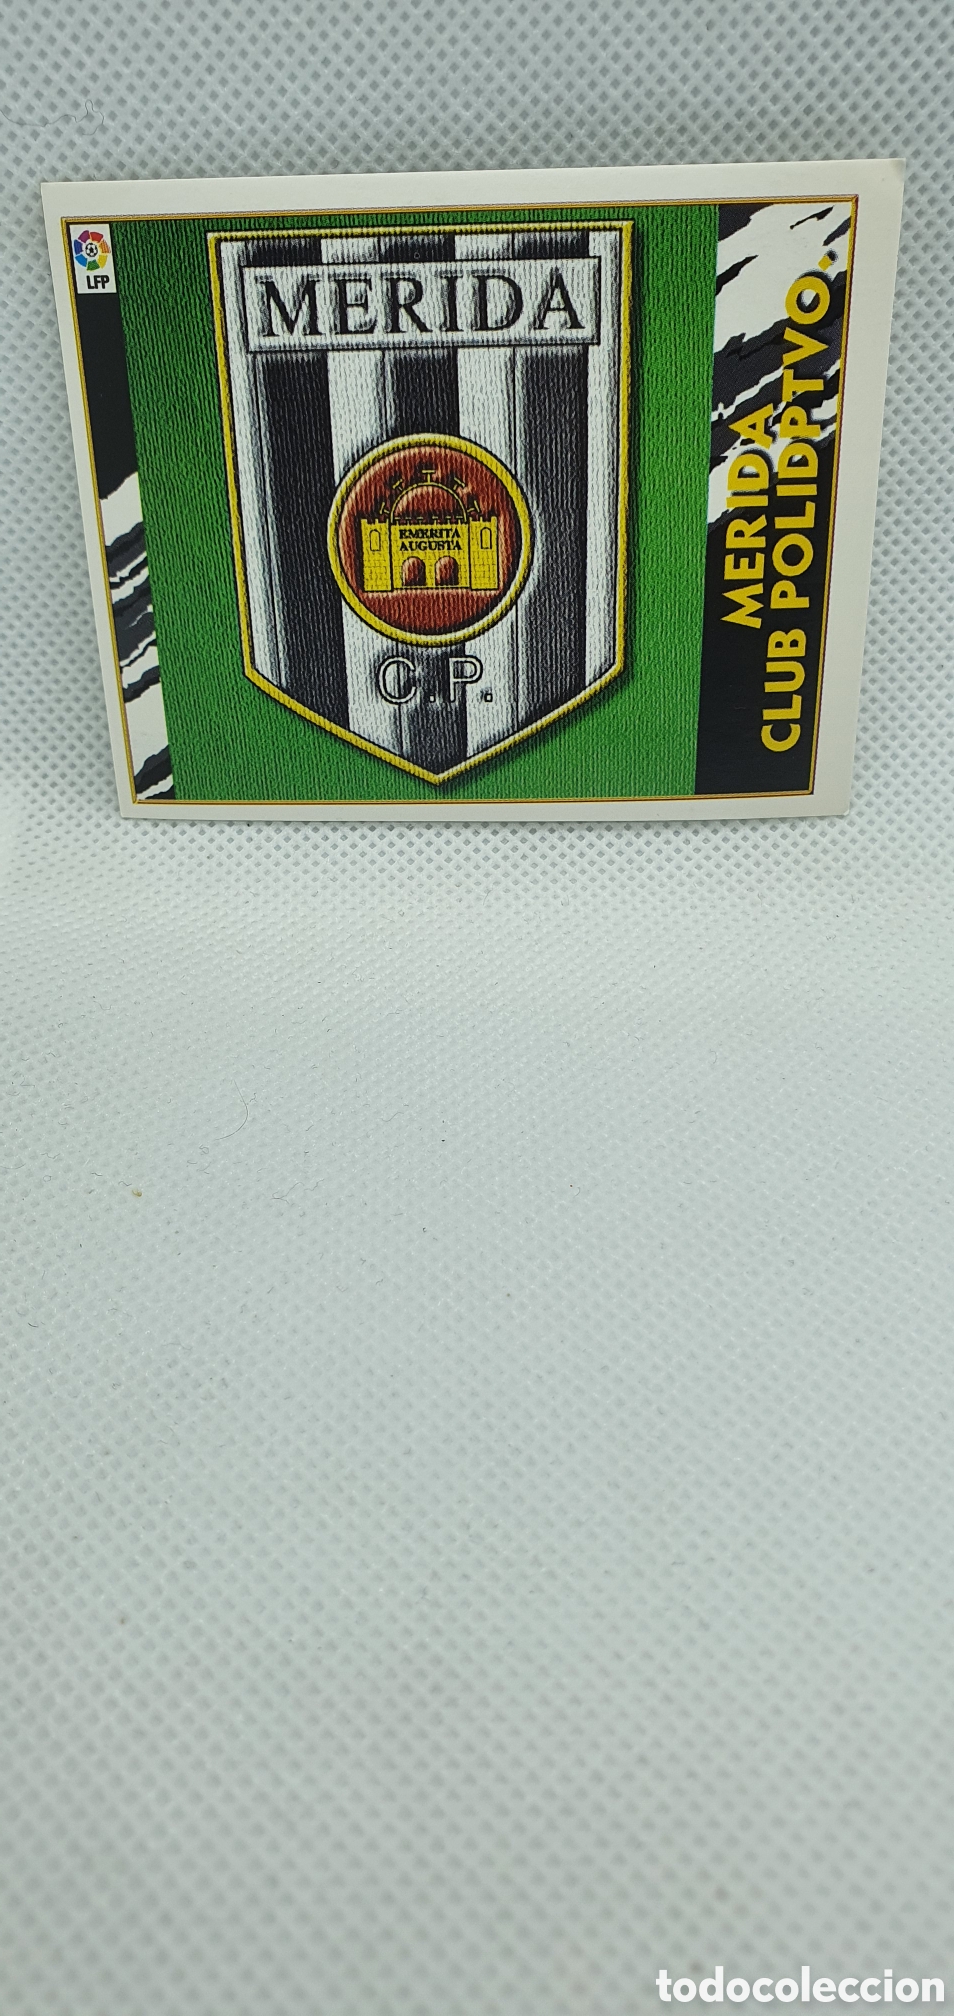 cromo de futbol escudo merida club deportivo me - Buy Collectible football  stickers on todocoleccion